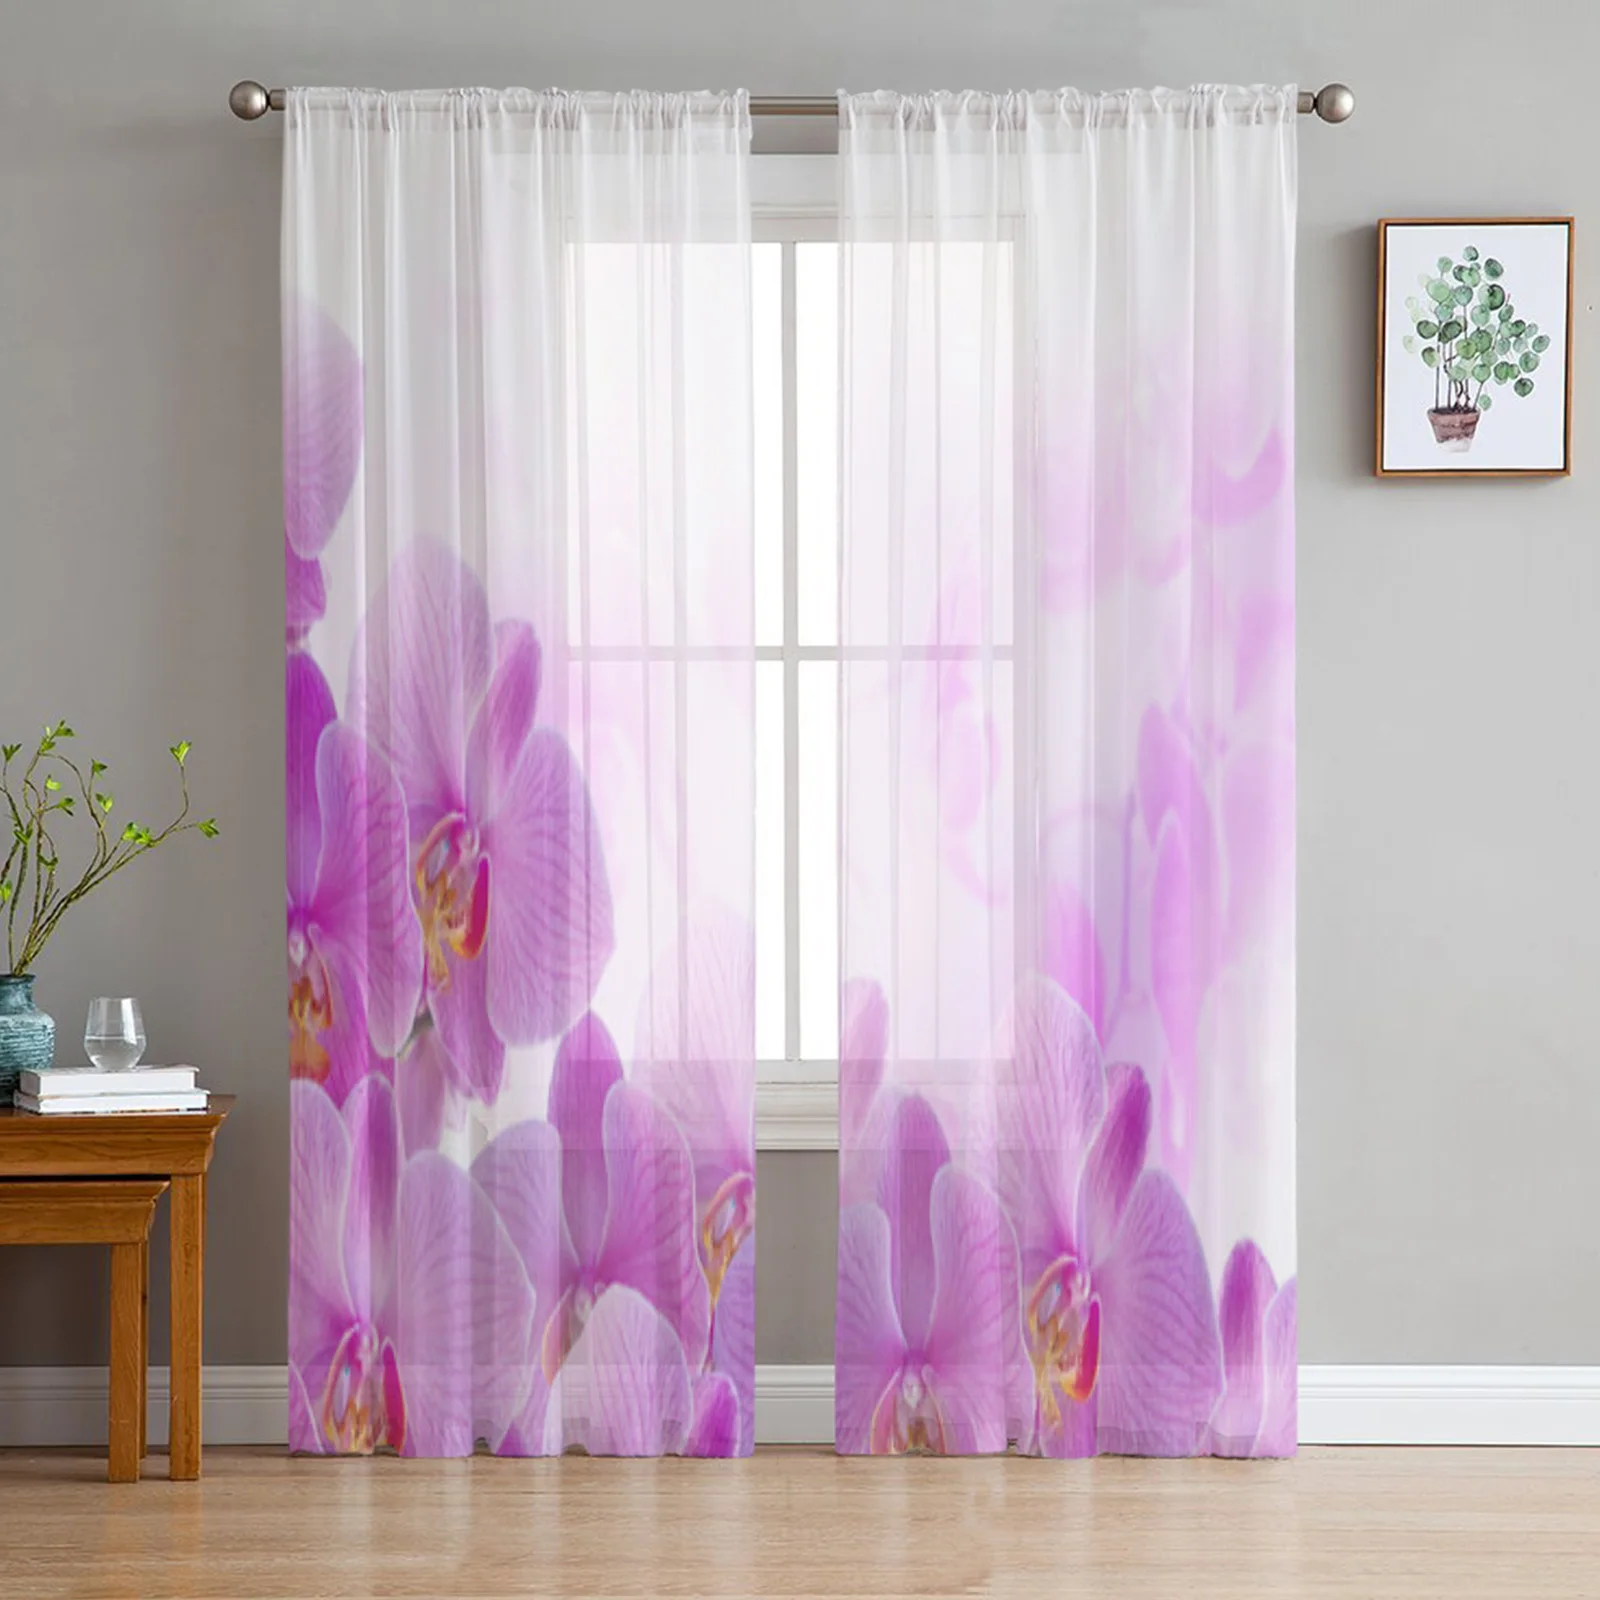 

Тюль с цветами орхидеи, прозрачные оконные шторы для гостиной, спальни, современные драпировки из искусственной кожи, тканевые занавески